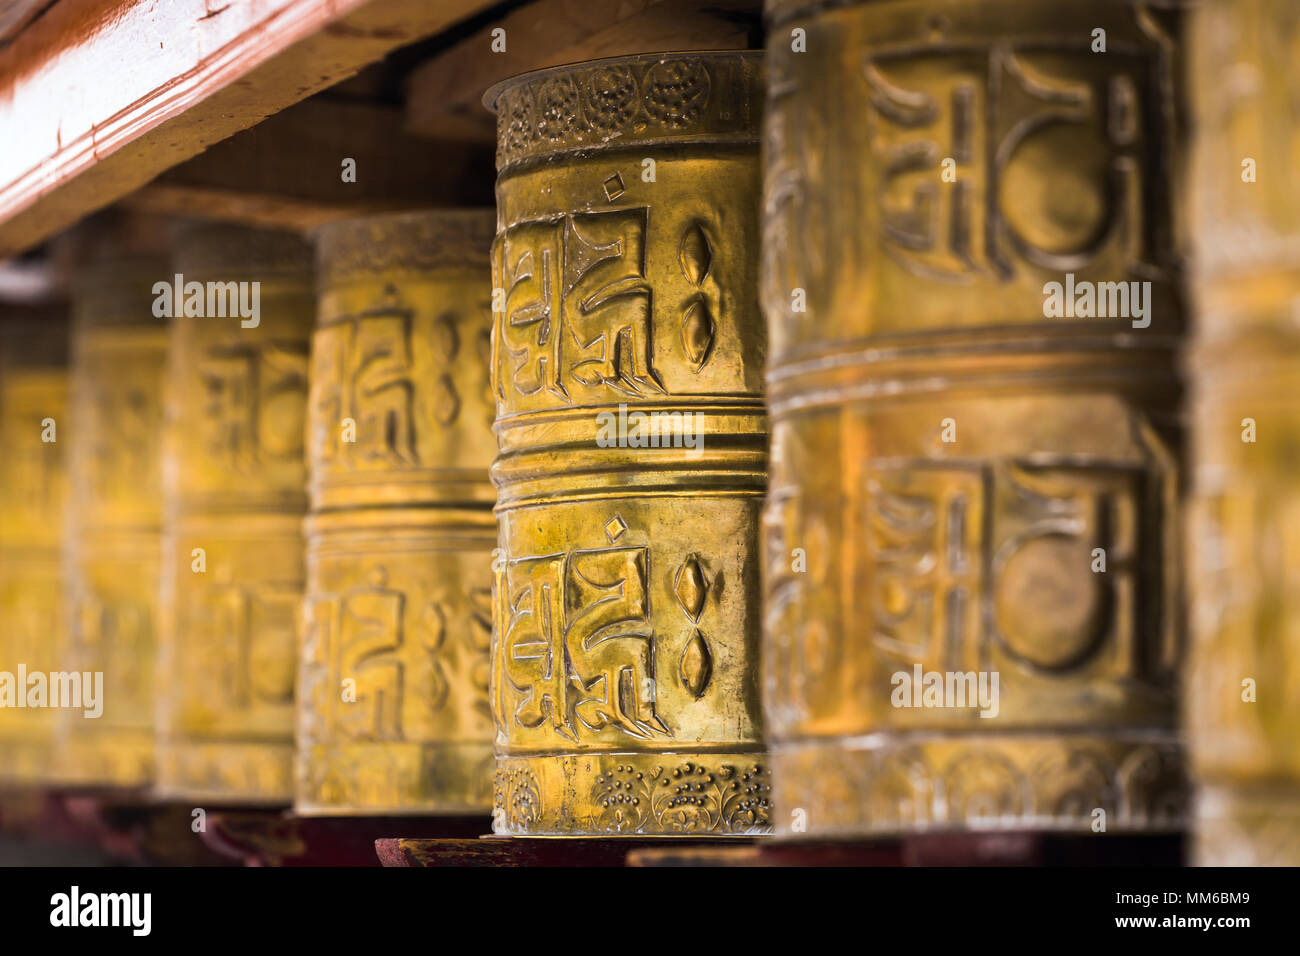 Orando budista tibetano de ruedas en Ladakh, India. Tradicionalmente, el mantra OM Mani Padme Hum está escrito en Sánscrito en el exterior de la rueda Foto de stock